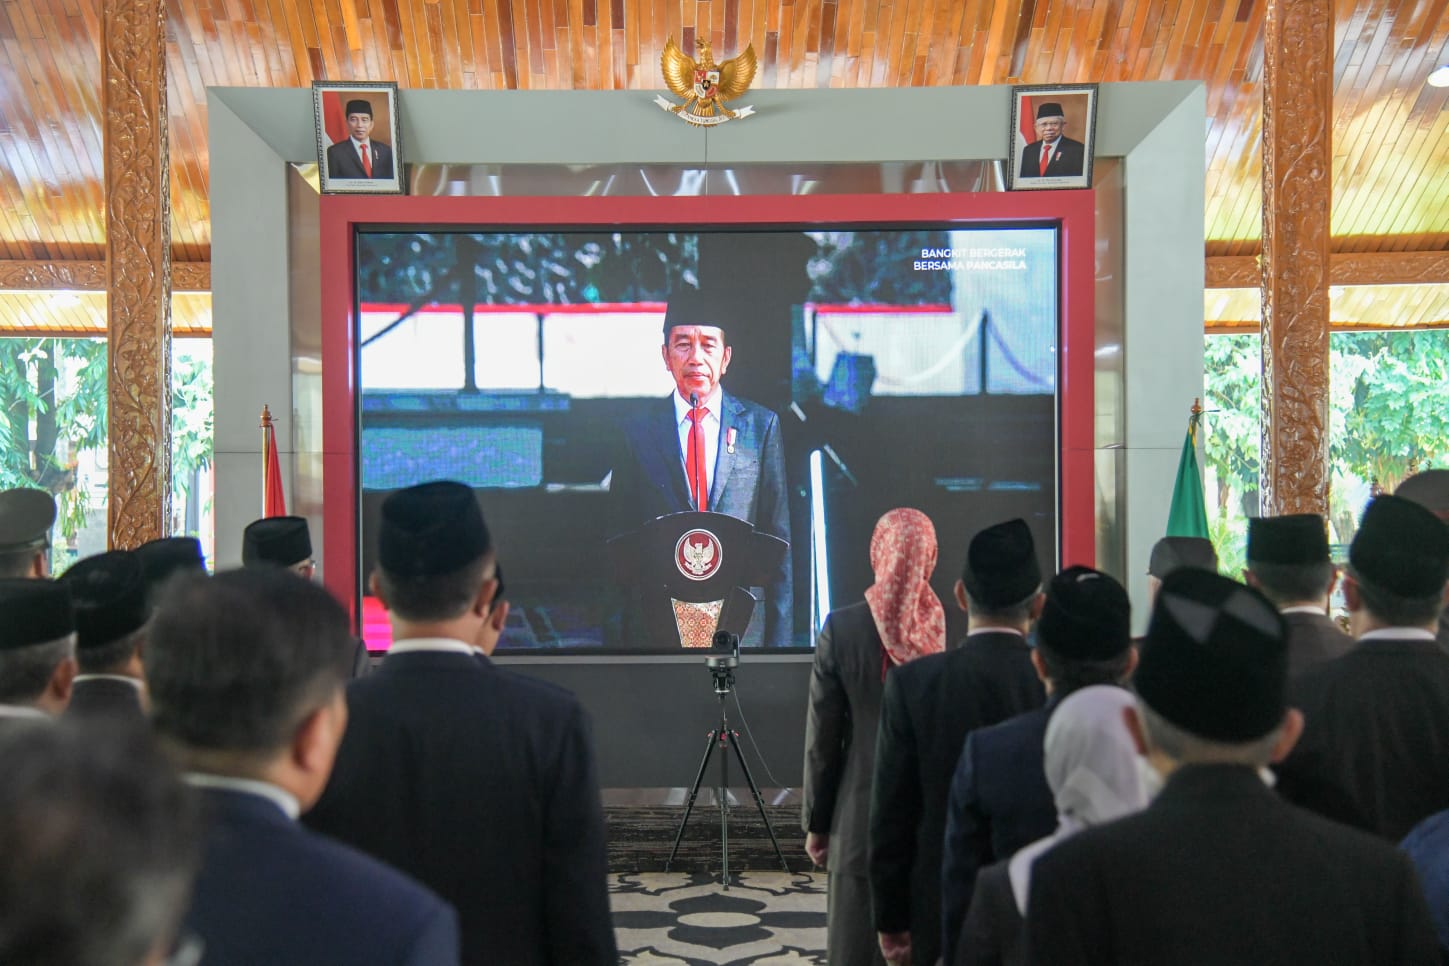 Peringati Hari Kesaktian Pancasila, Bupati Purwakarta Upacara Bareng Presiden Jokowi   